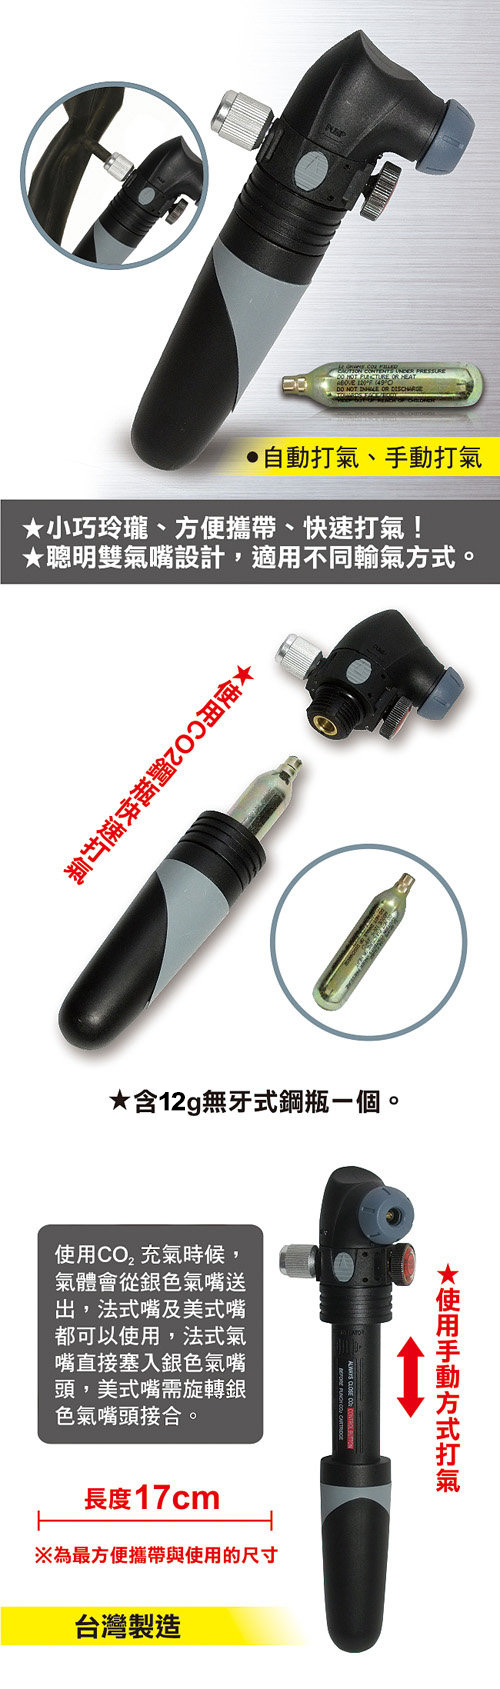 龍陣原廠-二合一攜帶型CO2打氣筒(鋼瓶充氣+手動充氣)